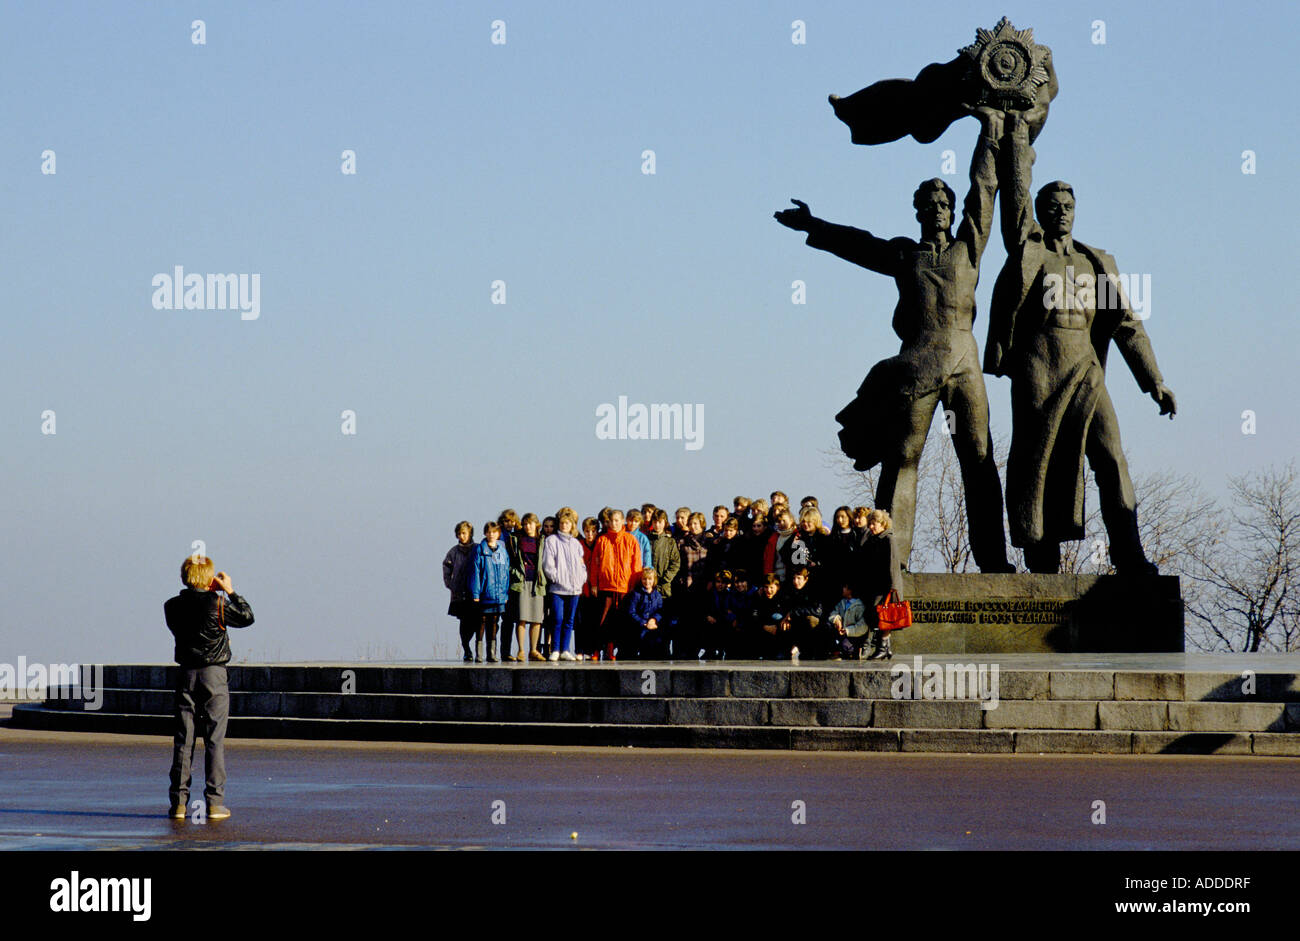 Eine Gruppe von Studenten steht neben der Statue der Freundschaft in Kiew, Oktober 1989. Diese Statue zeigt ukrainische und russische Arbeiter vereint. Sie wurde im April 22 nach dem russischen Einmarsch in die Ukraine abgebaut. Stockfoto